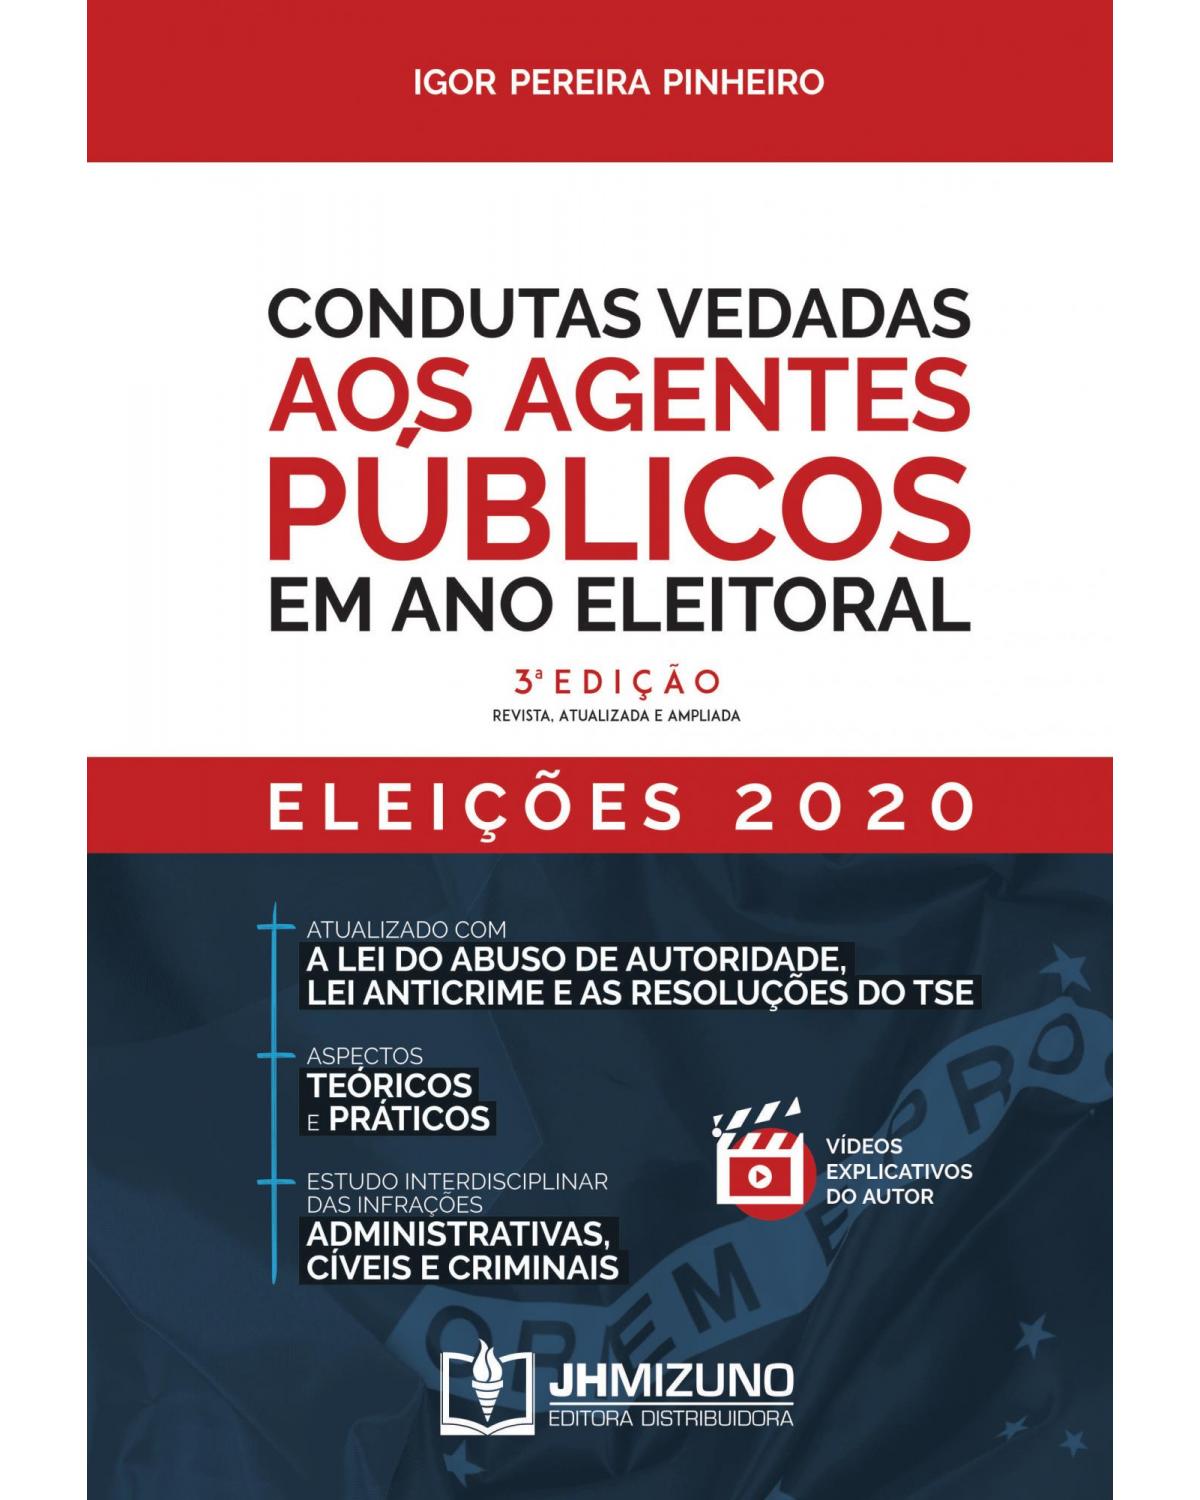 Condutas vedadas aos agentes públicos em ano eleitoral - 3ª Edição | 2020